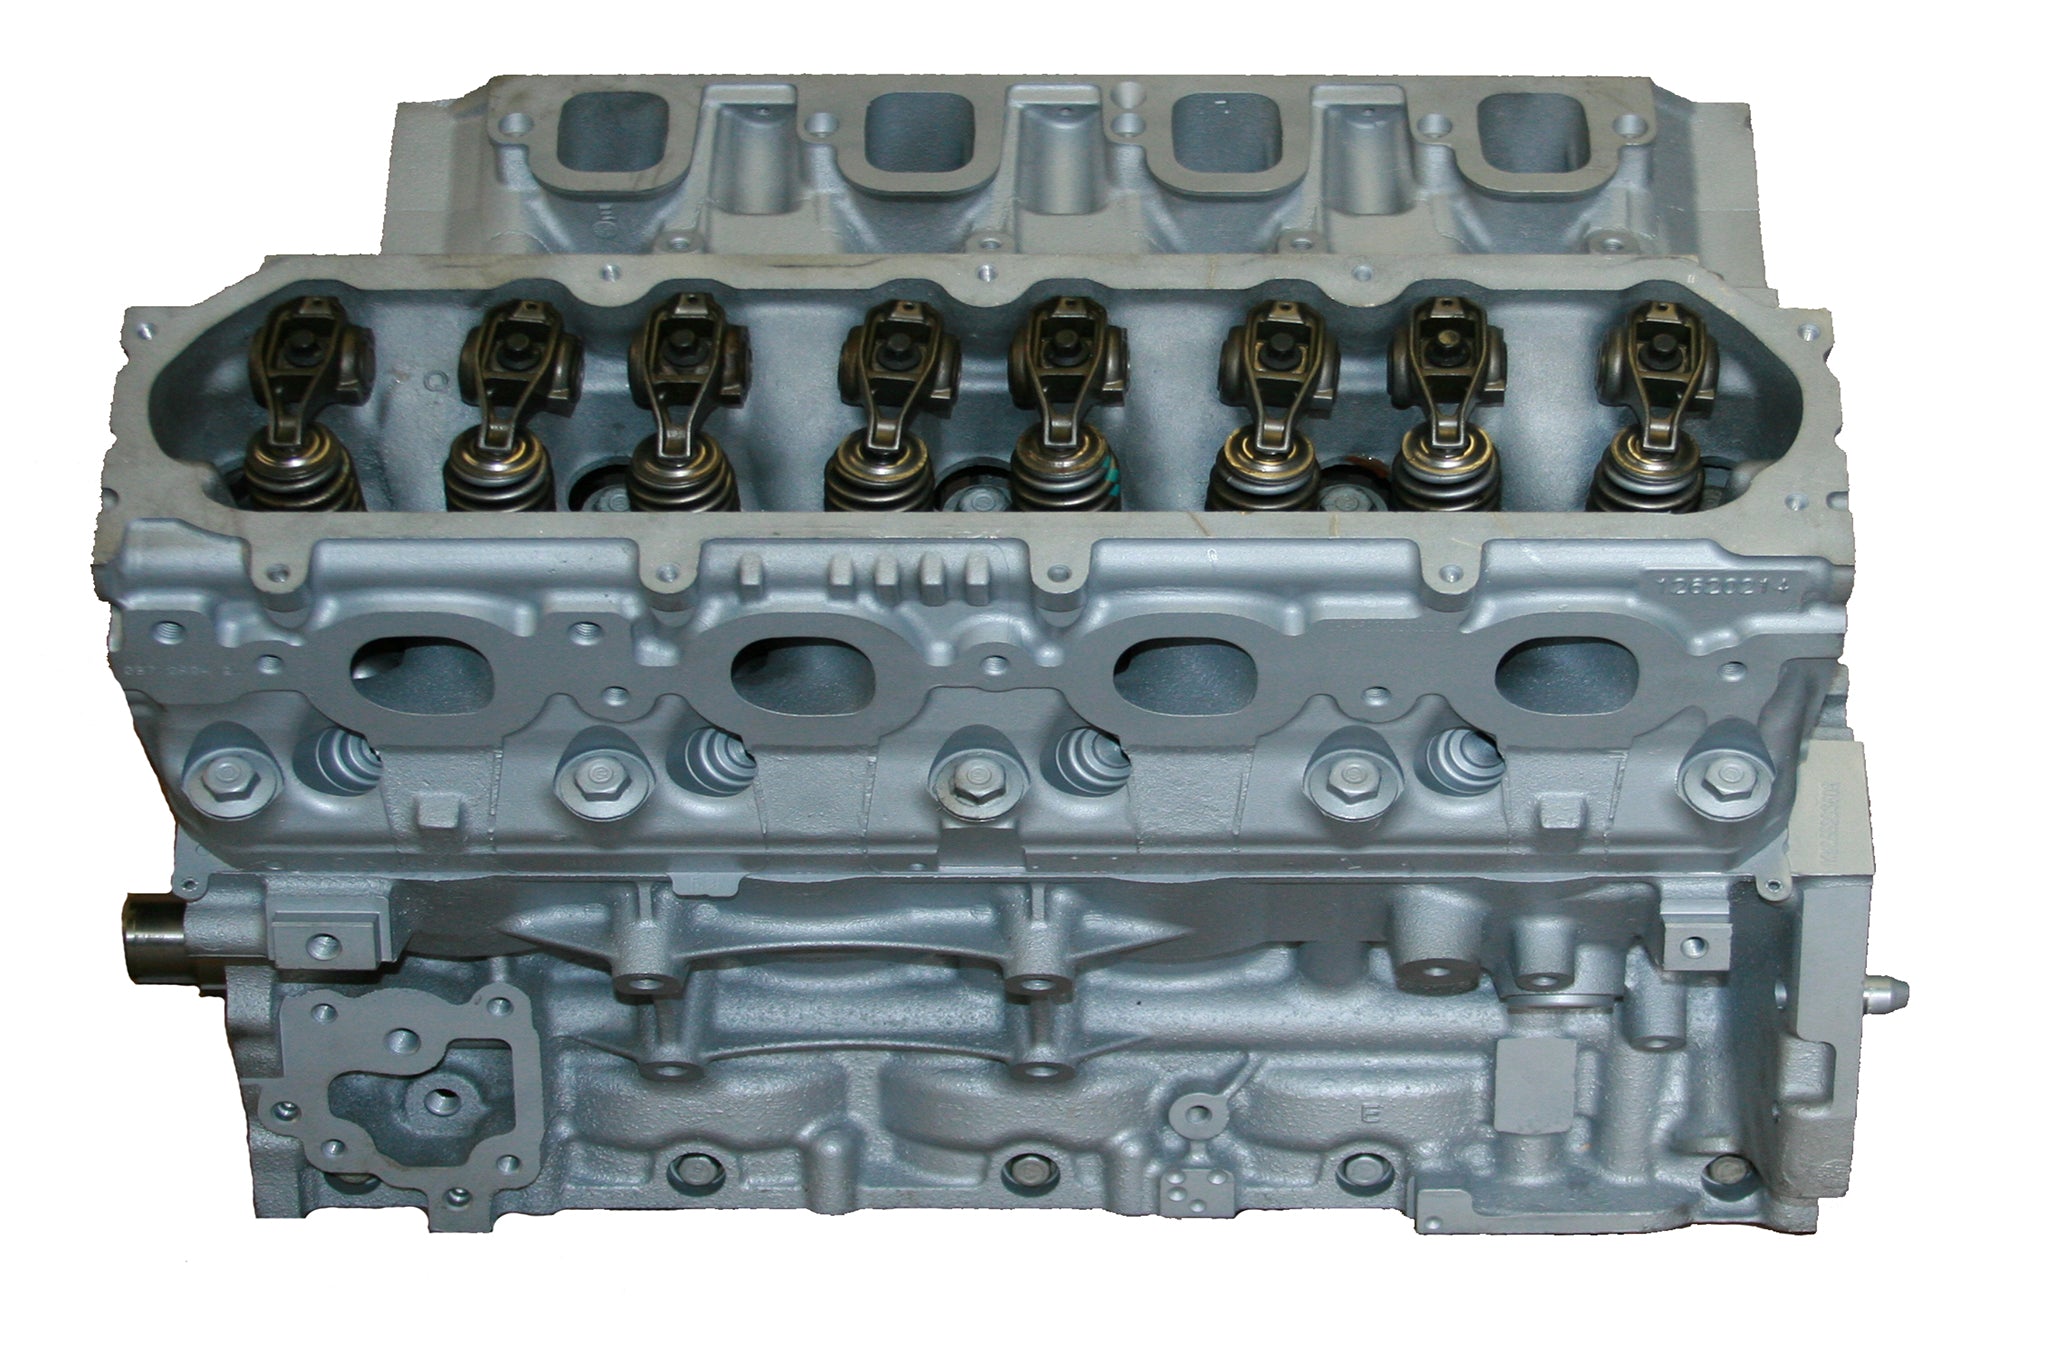 2014-18 Chevy 5.3L L83 Vin C Flex Aluminum Block VVT GDI